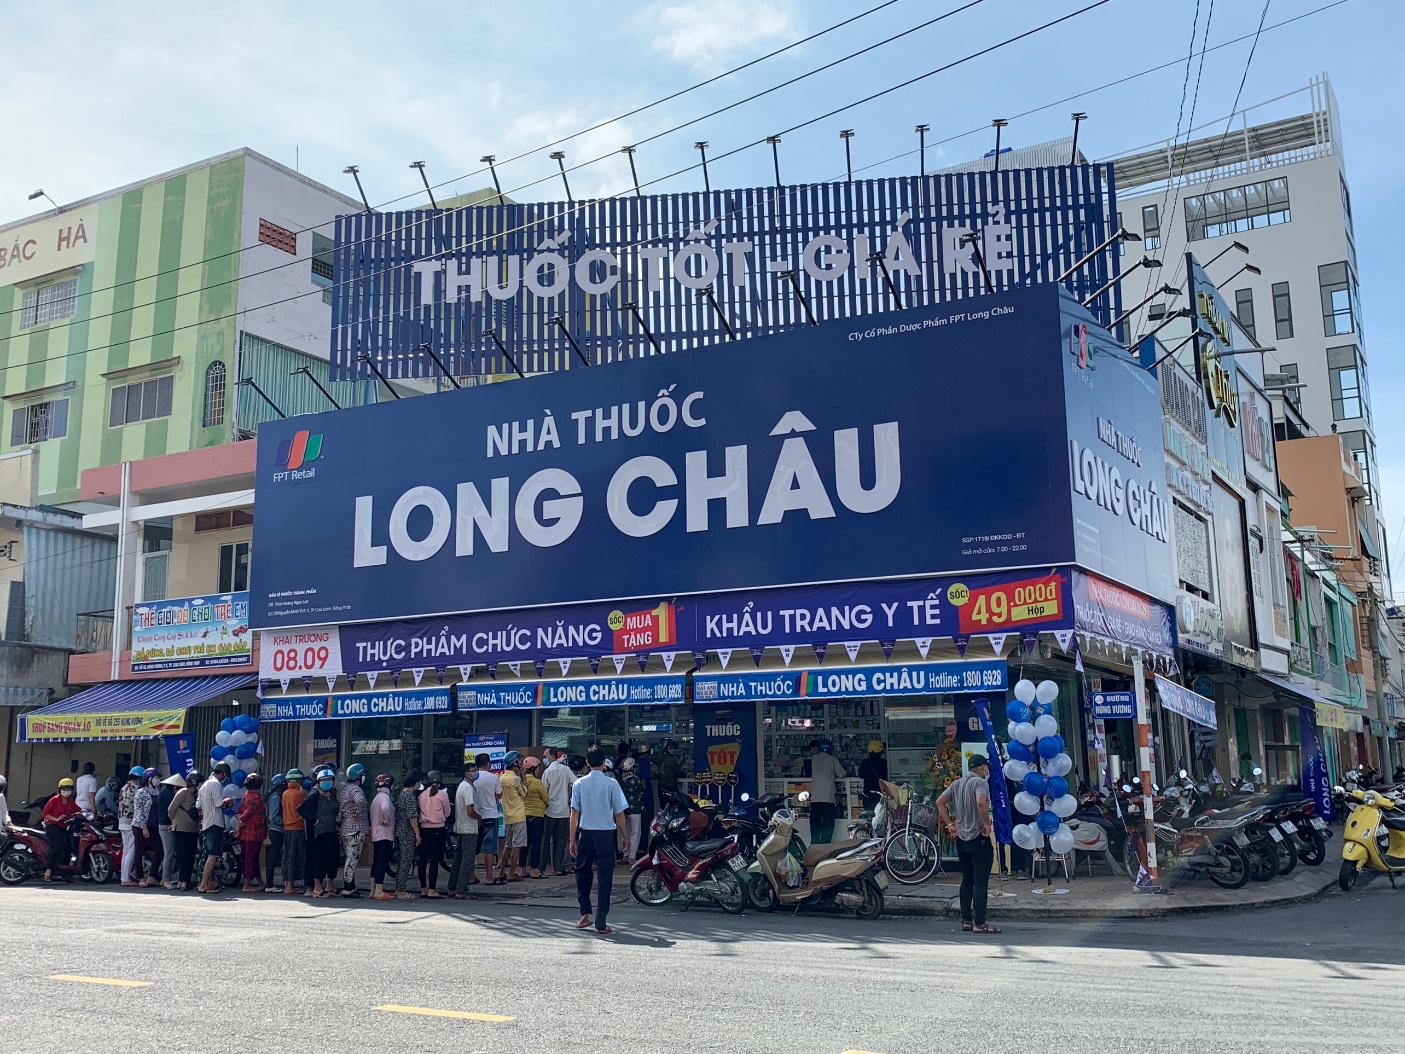 Hệ thống nhà thuốc FPT Long Châu chính thức trở thành nhà phân phối nhãn hàng Mudaru của TNB Việt Nam